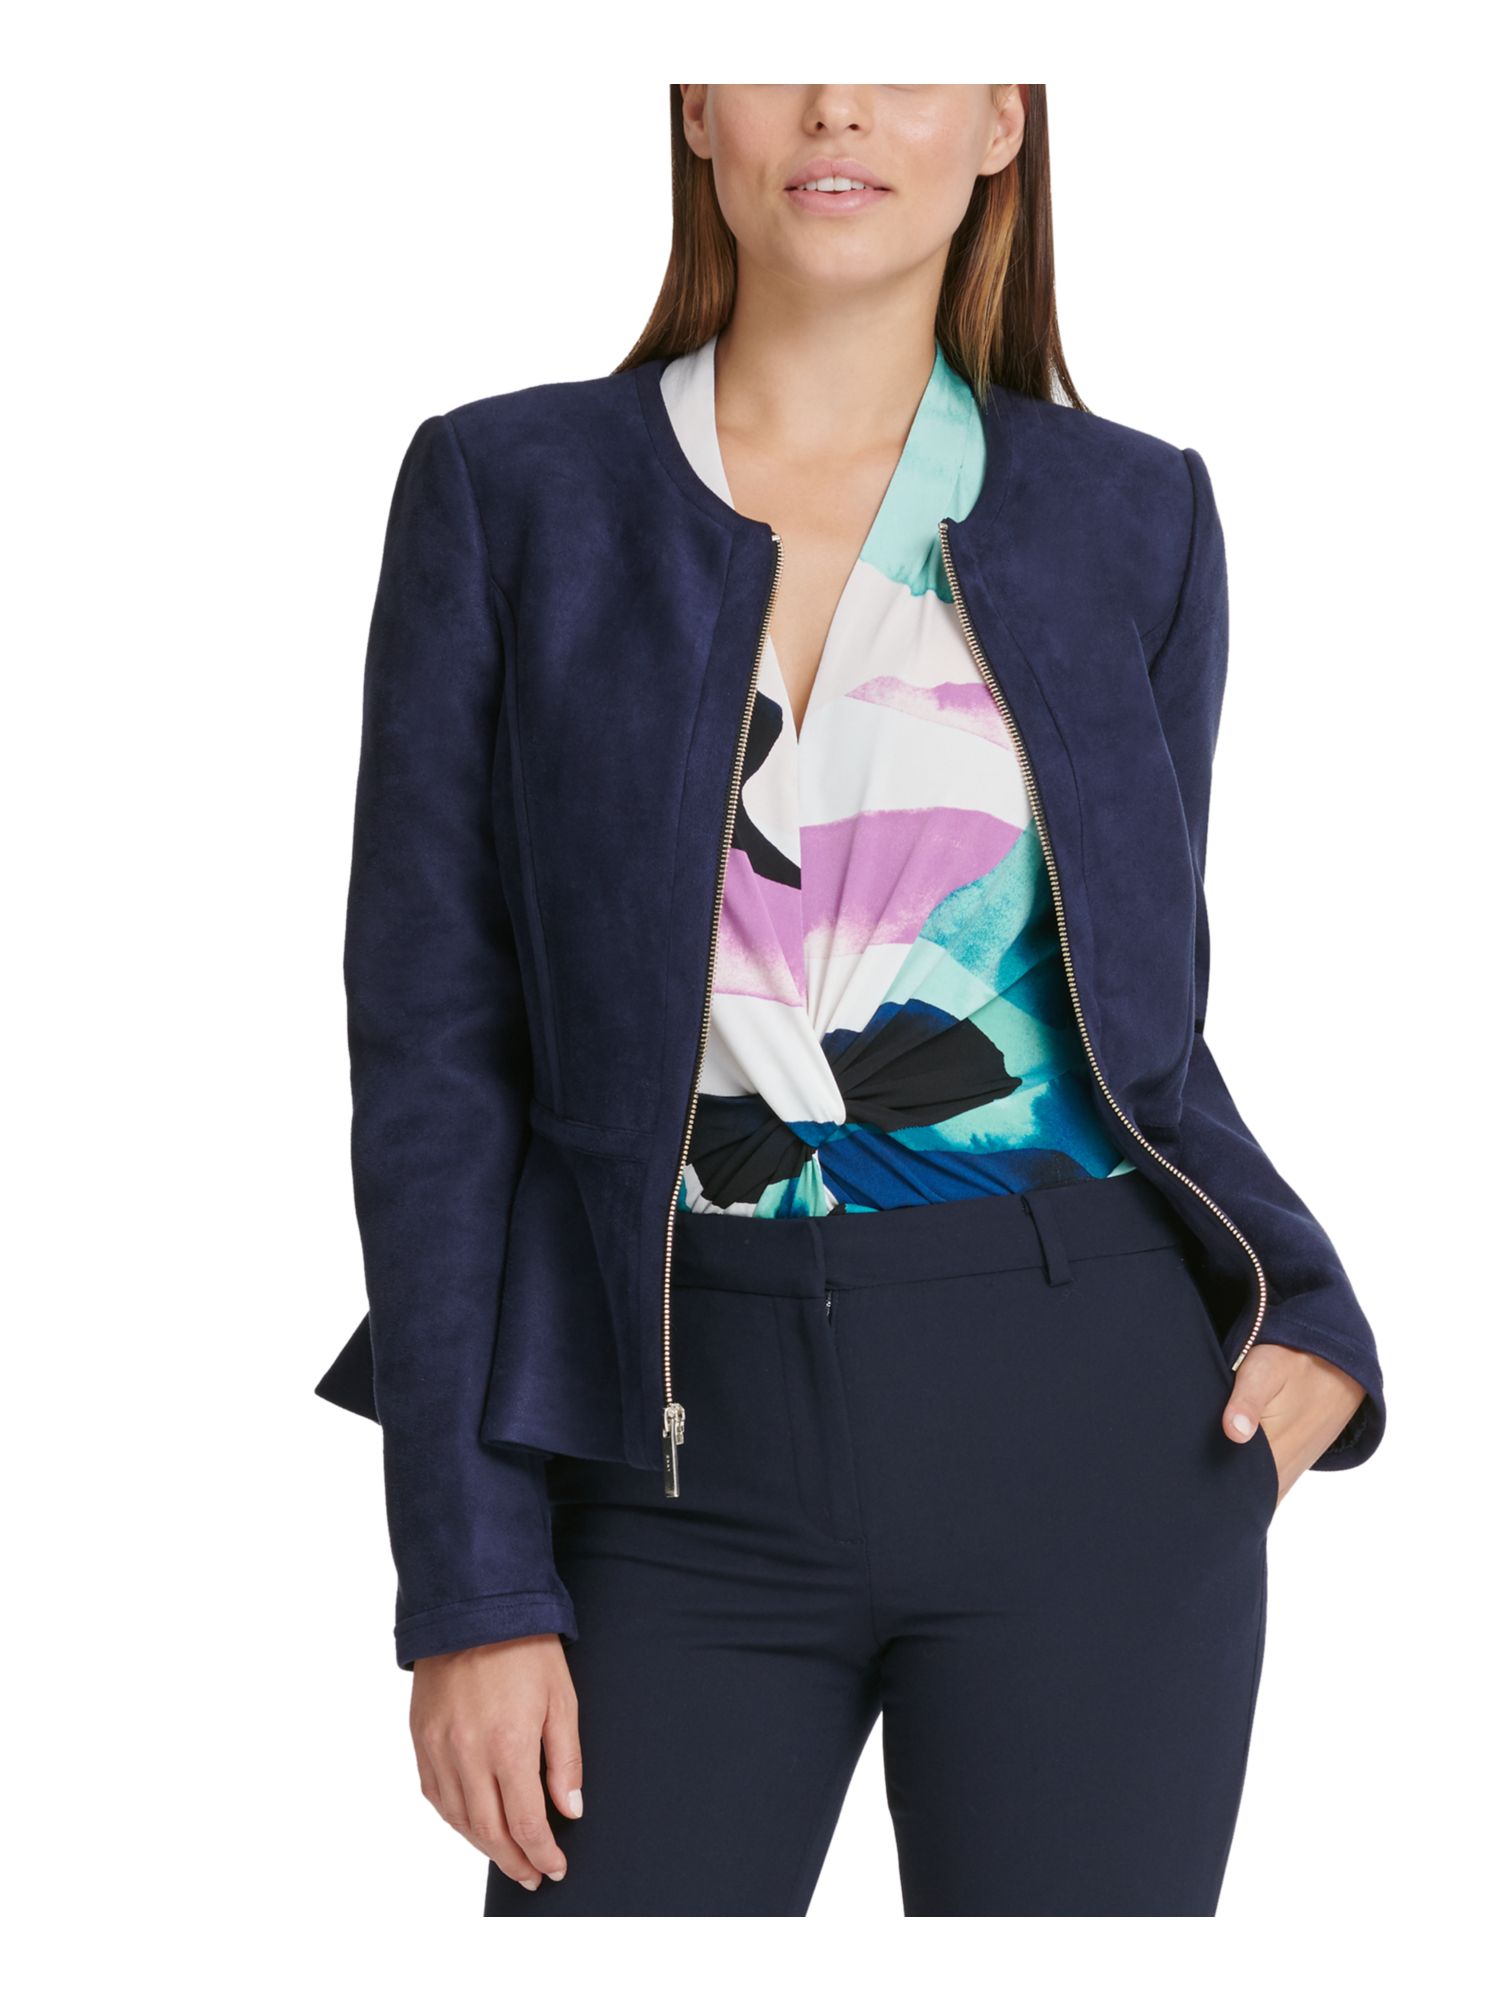 DKNY Women's Faux Suede Lightweight Peplum Jacket Blue Size 4